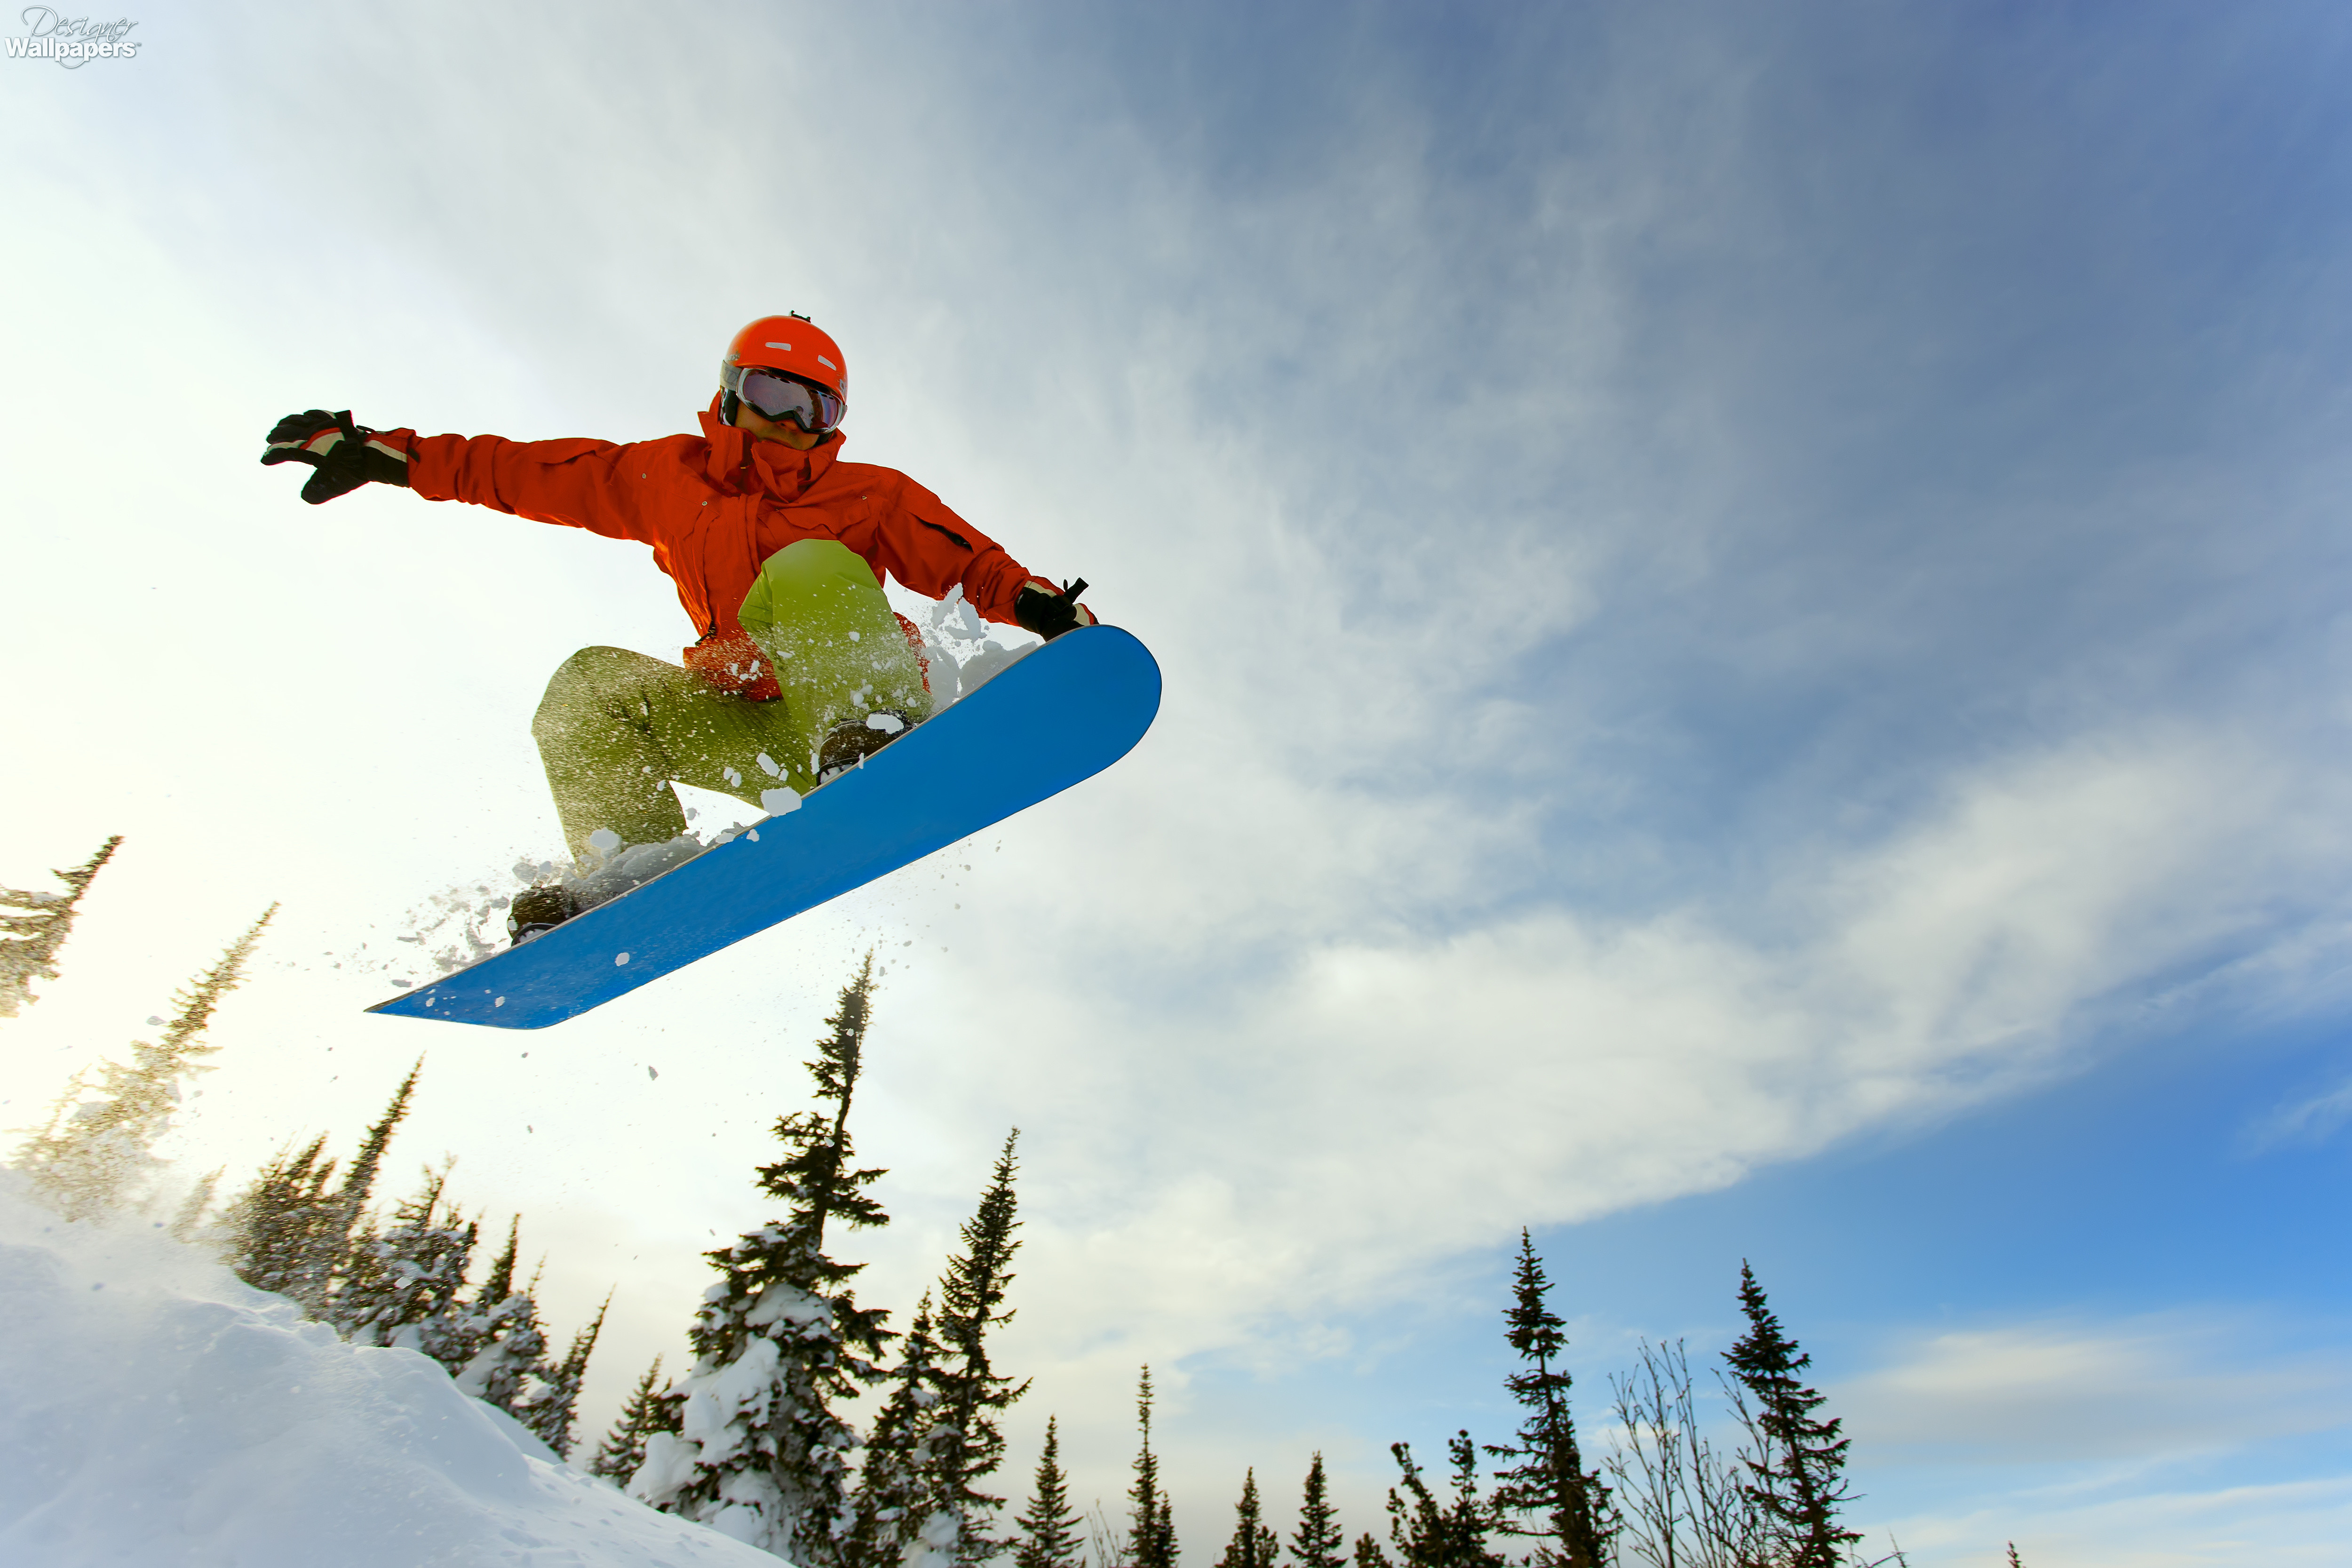 Go snowboarding. Фристайл сноуборд катания. Трэвис Райс сноубордист. Зимний спорт. Трюки на сноуборде.